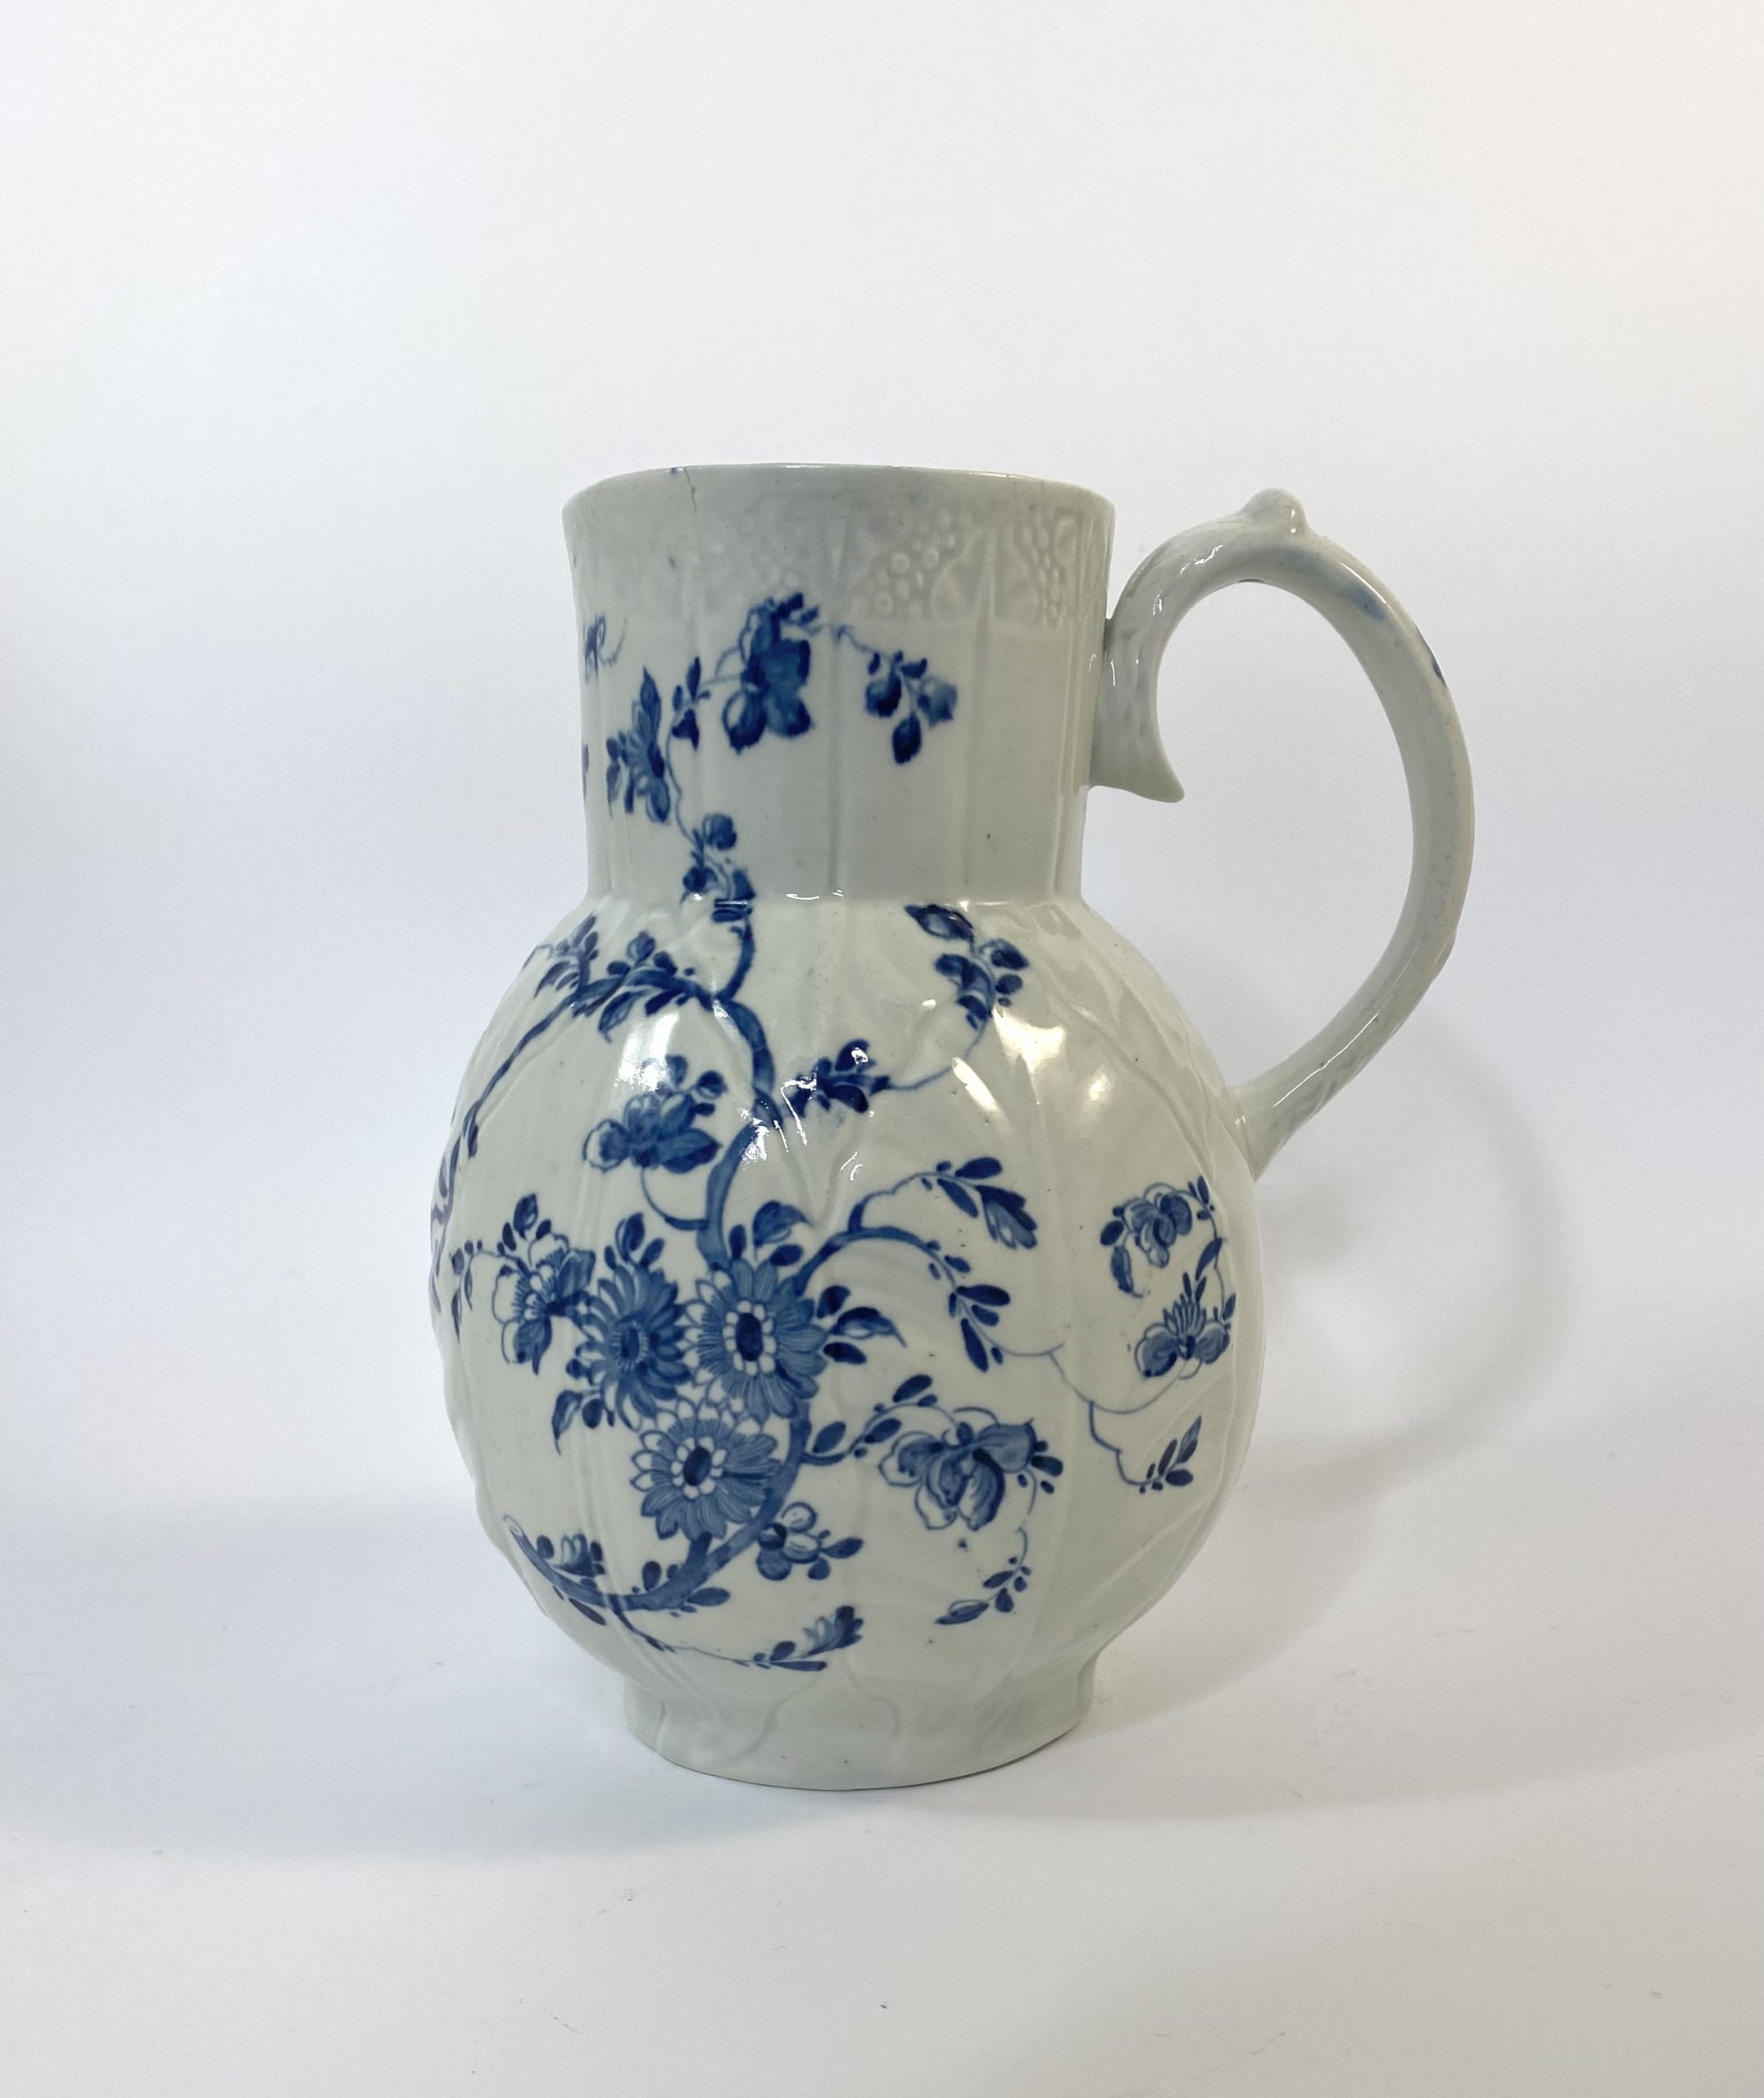 Worcester porcelain ‘Dutch jug’, c. 1758